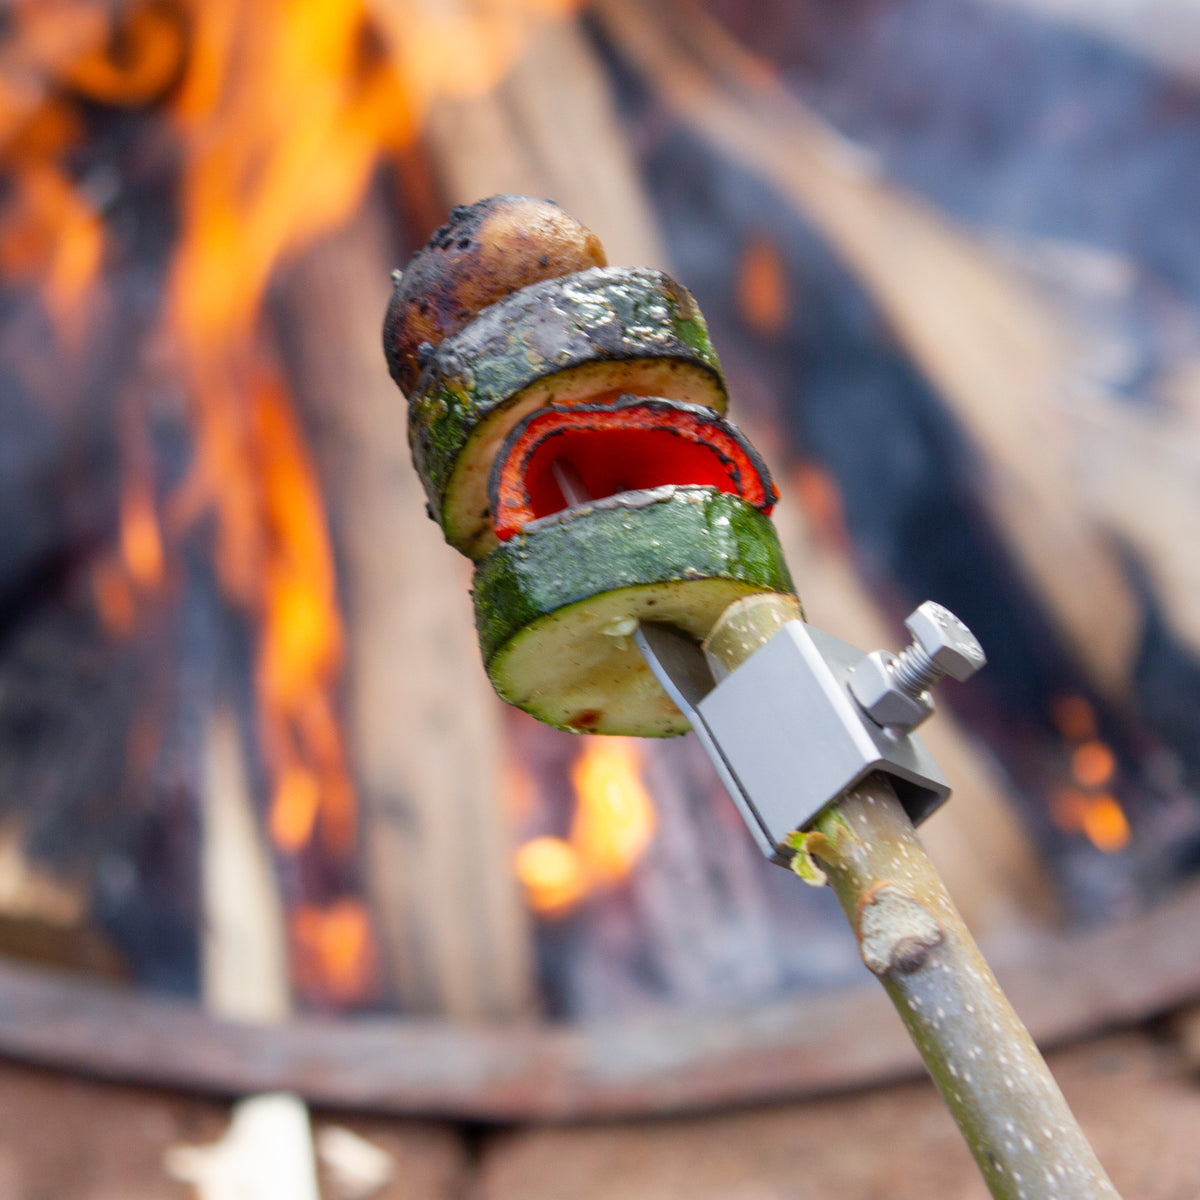 Rondack Campfire Forks | Roasting Sticks | Set of 2